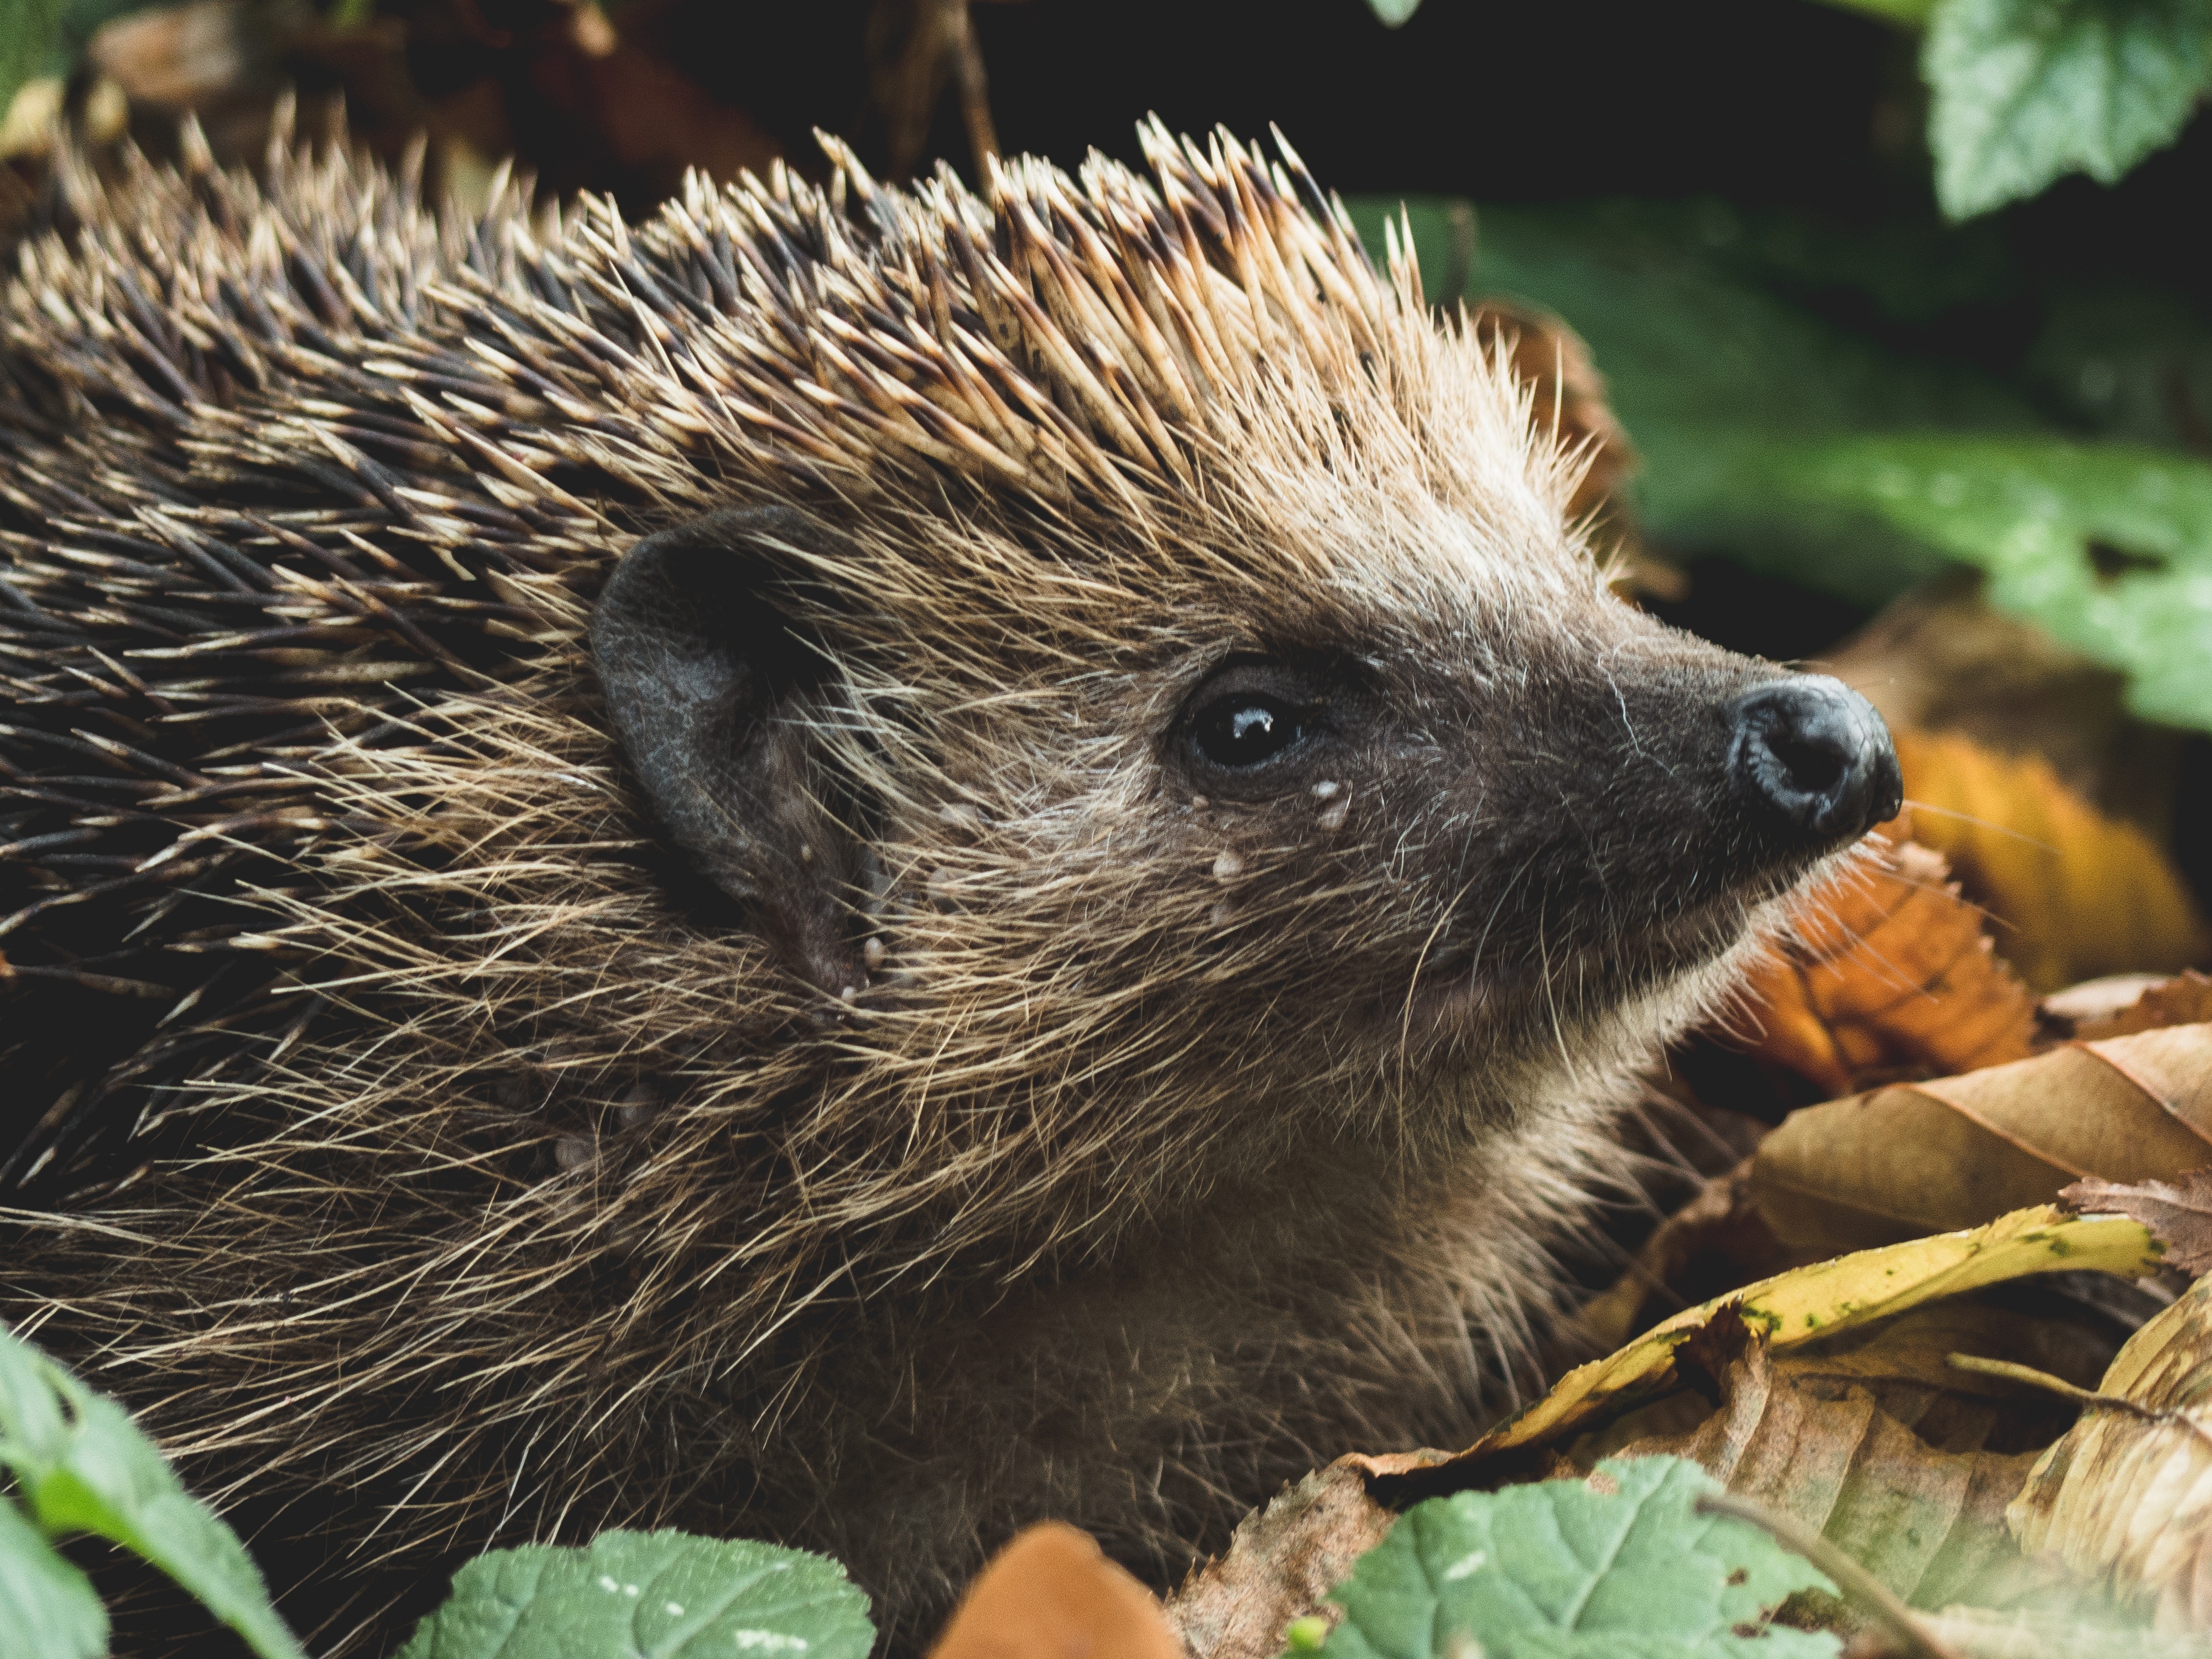 European Hedgehog Erinaceus europaeus © Tadeusz Lakota Unsplash